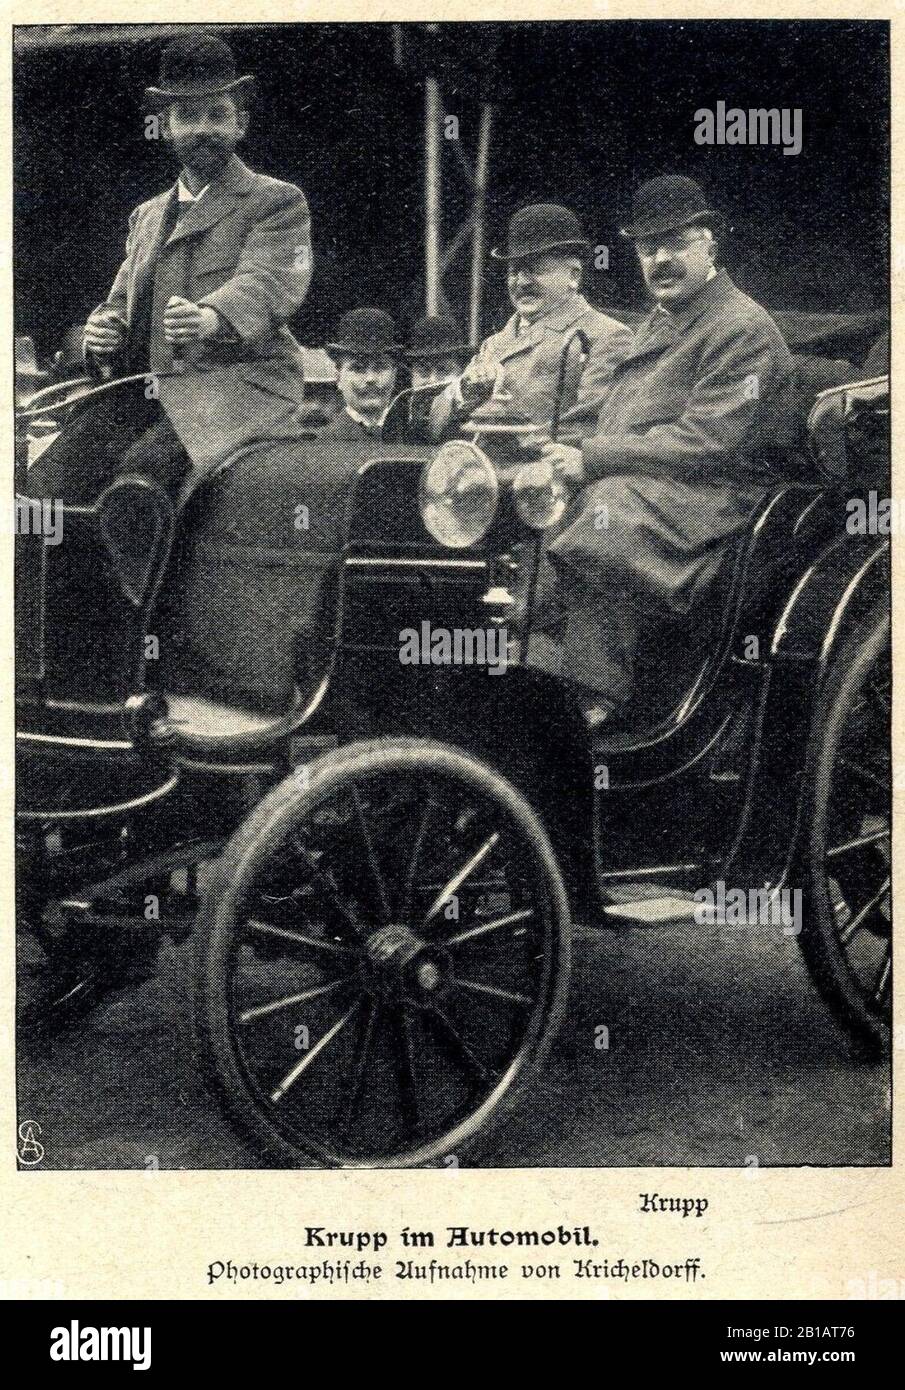 Friedrich Alfred Krupp im Automobil, 1902. Stock Photo